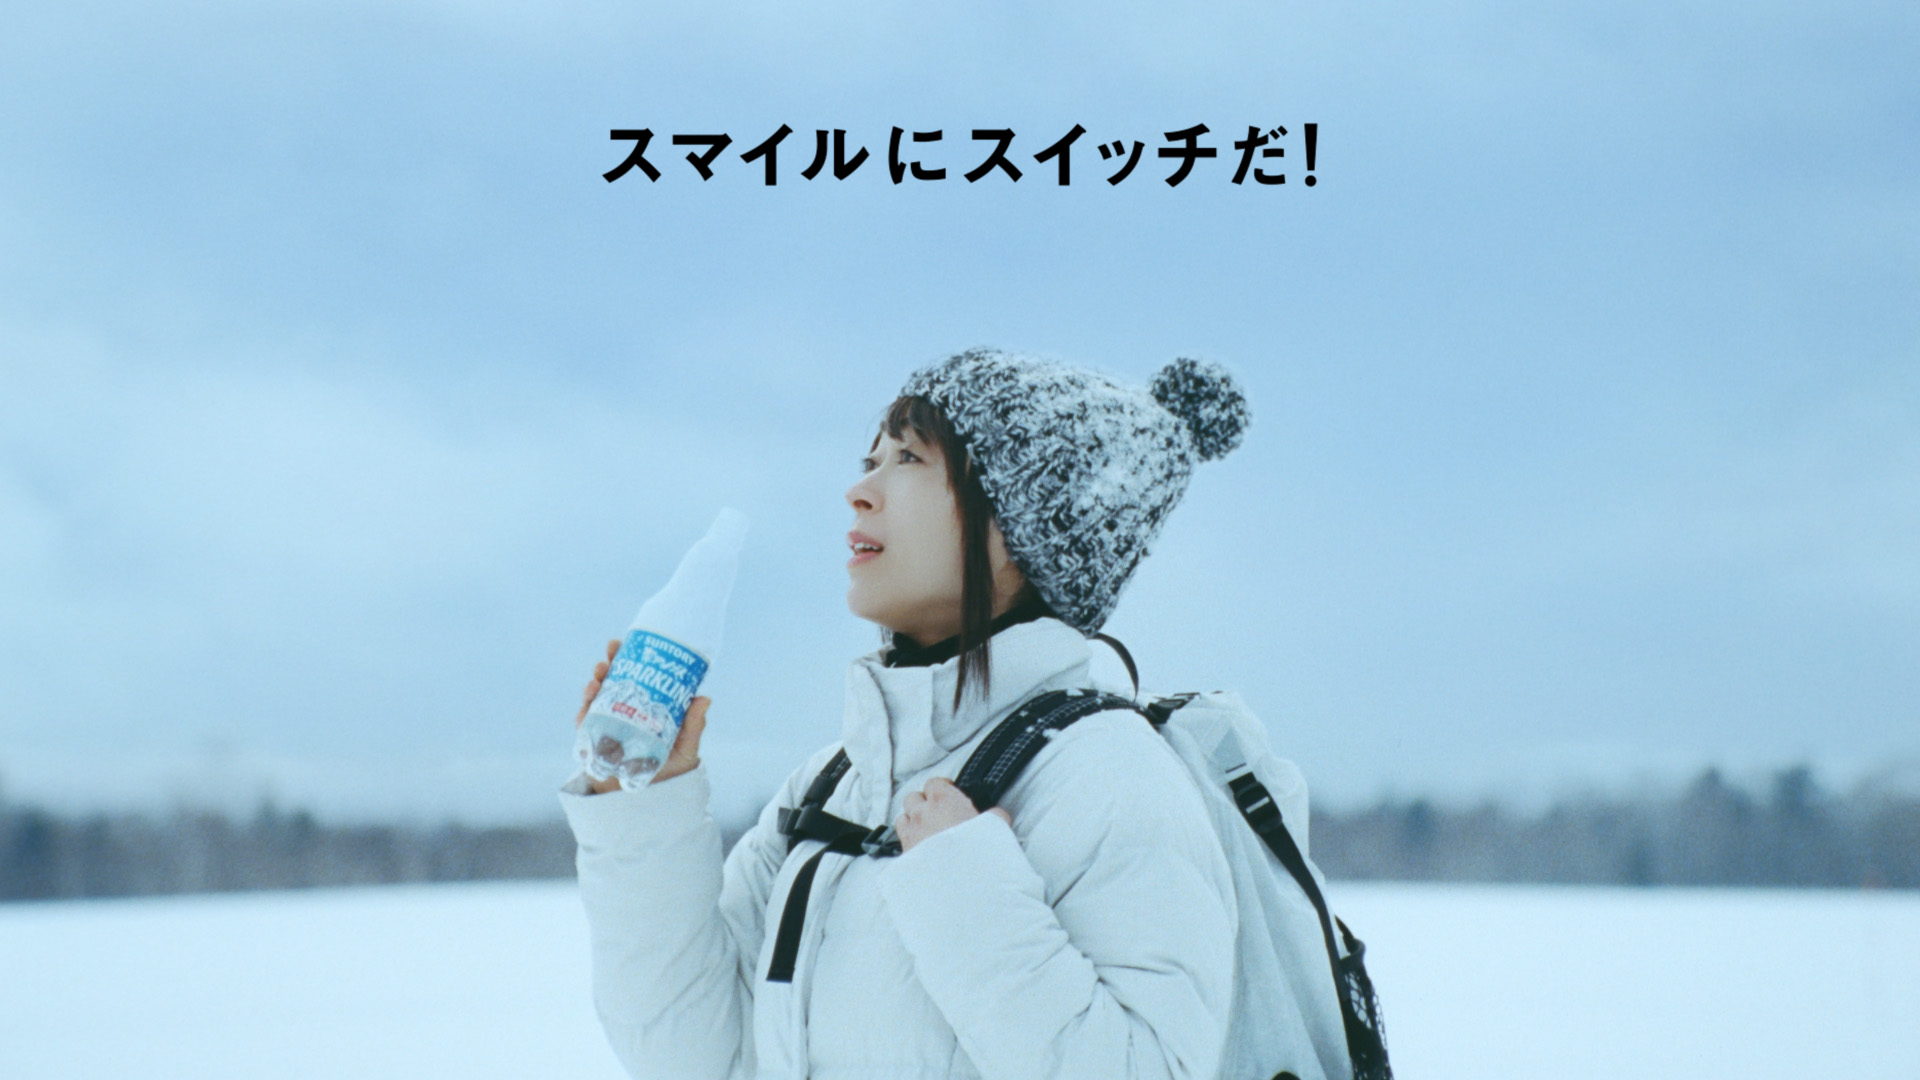 宇多田ヒカル出演サントリー新cmの舞台は大雪原 20周年記念の新曲を